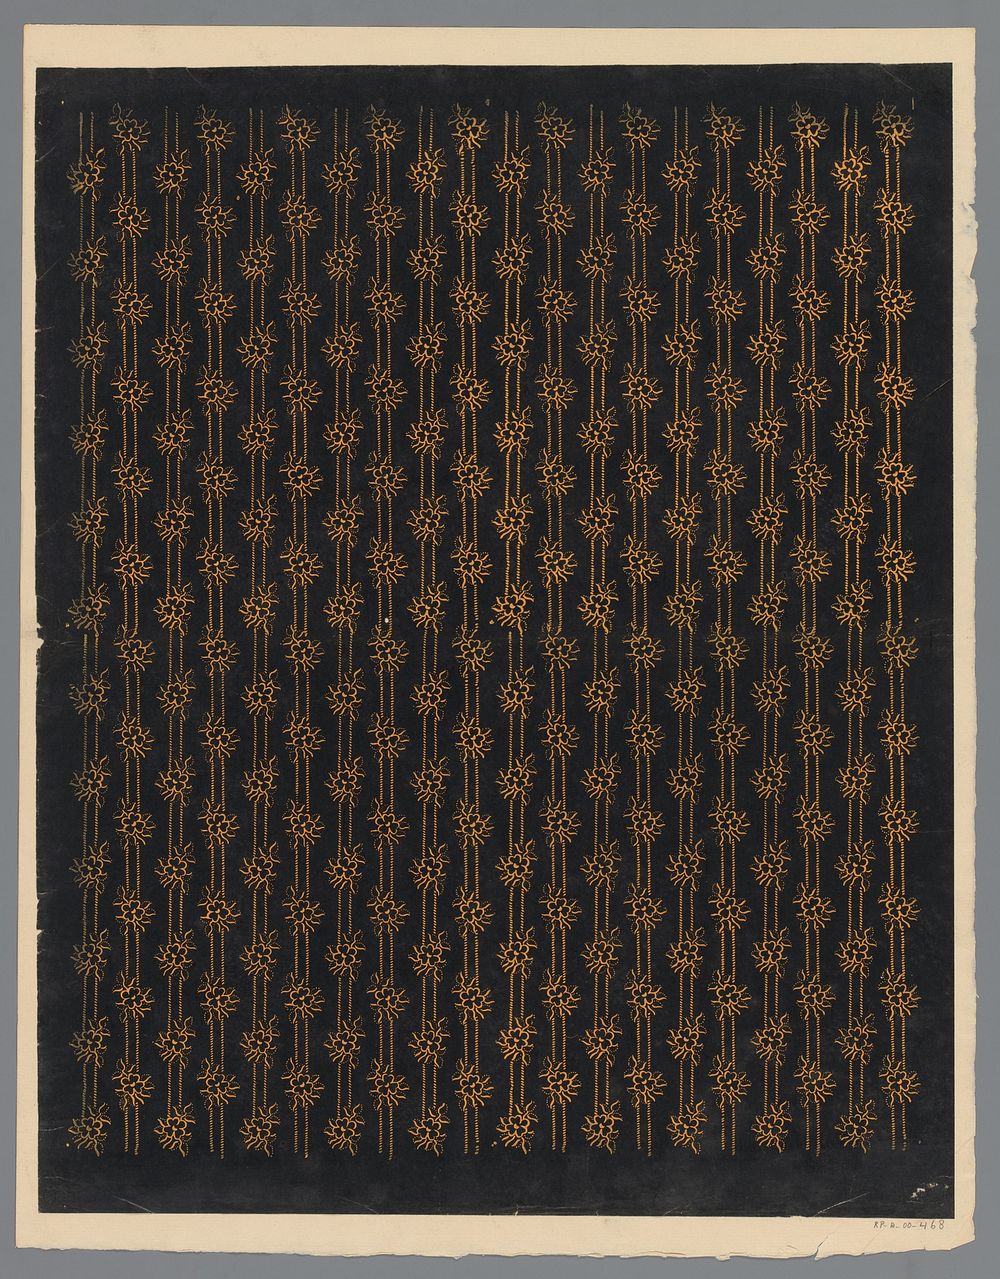 Blad met banenpatroon van bloemmotief verbonden door twee rijen streepjes (1800 - 1900) by anonymous